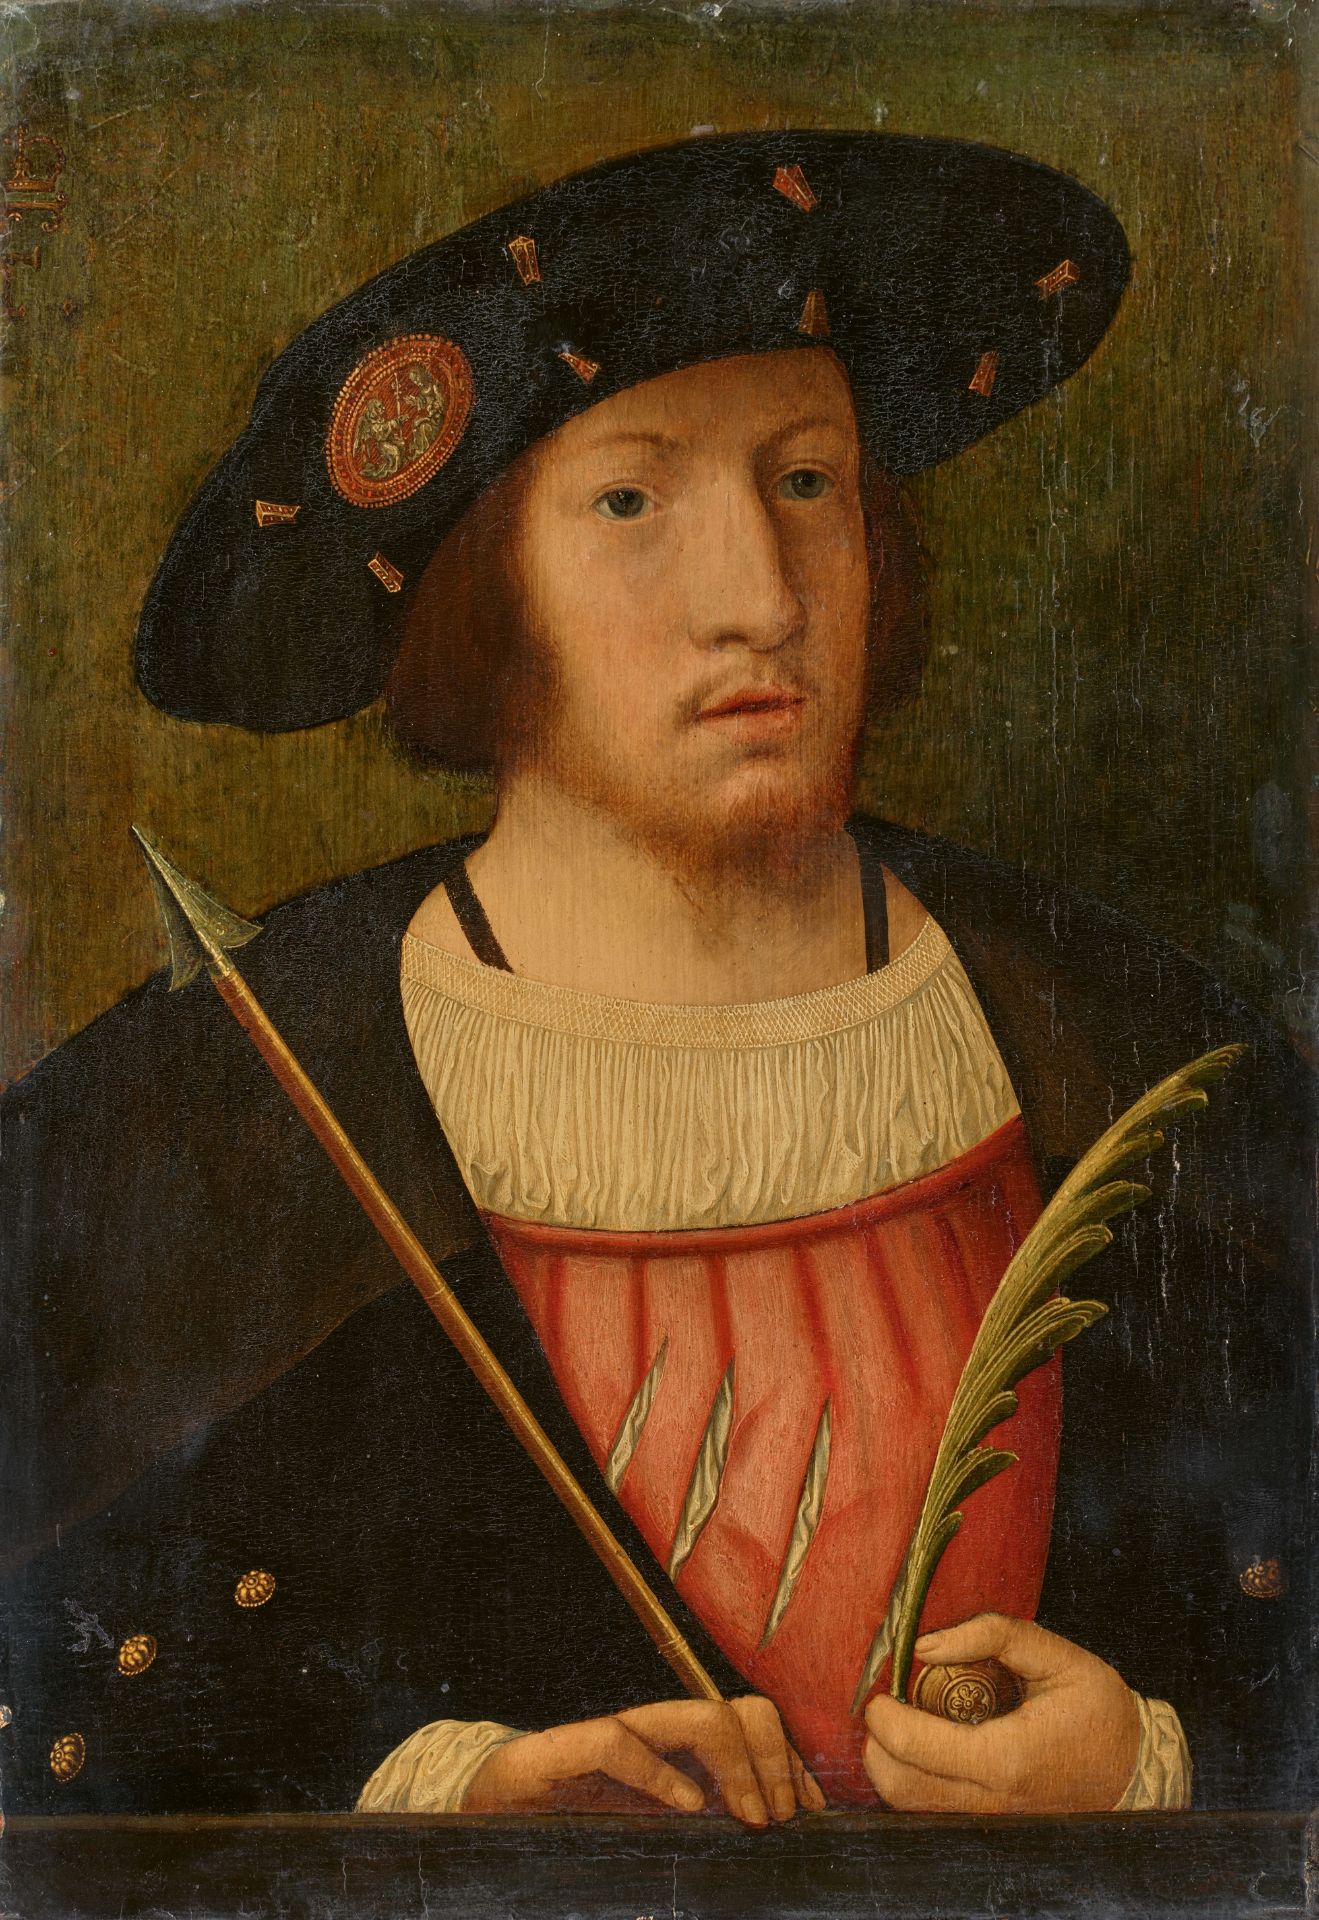 German School around 1520/1530, Portrait of a Man